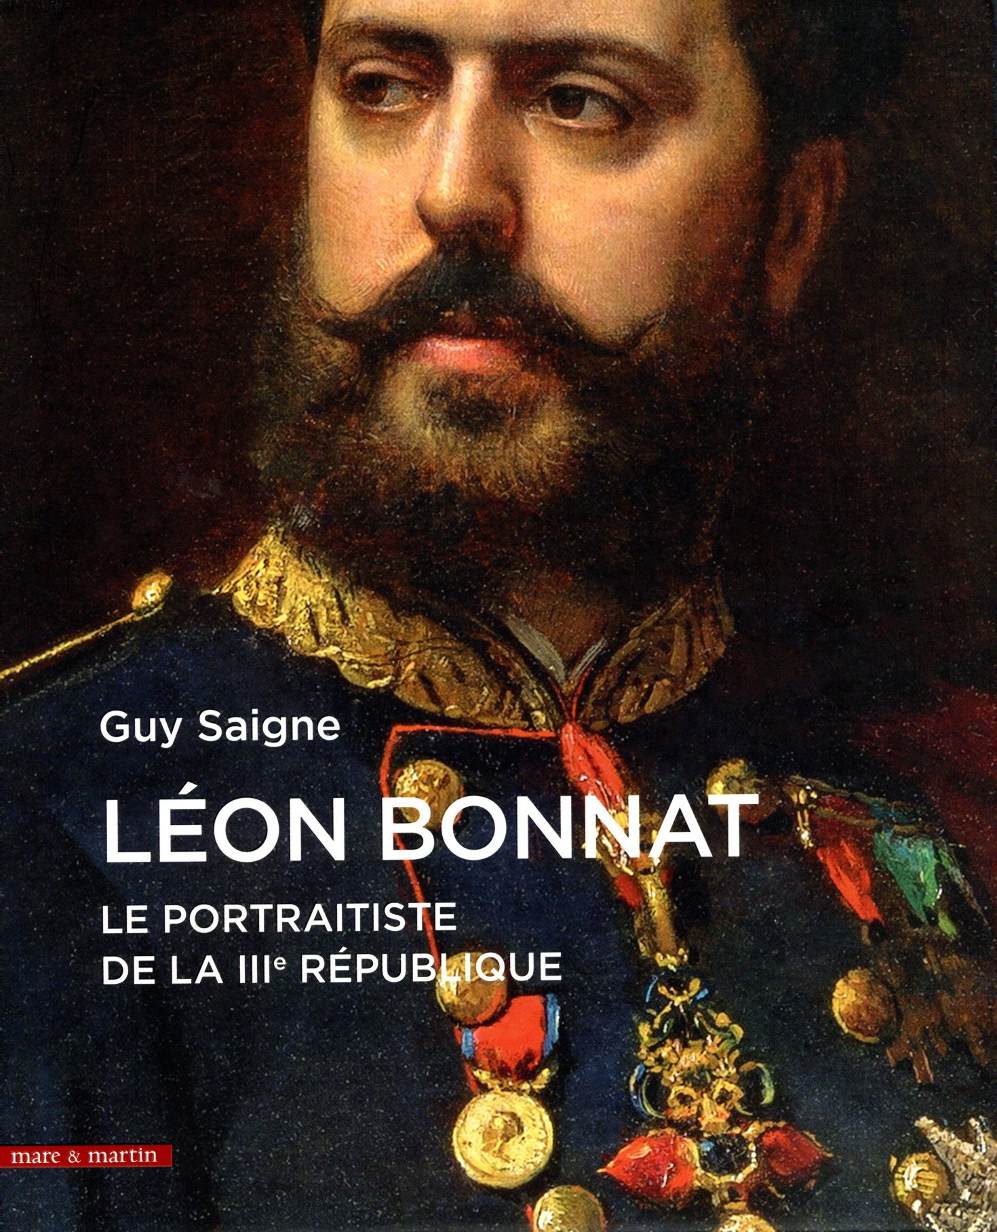 Guy Saigne, lauréat de l'Académie française pour son « Léon Bonnat »